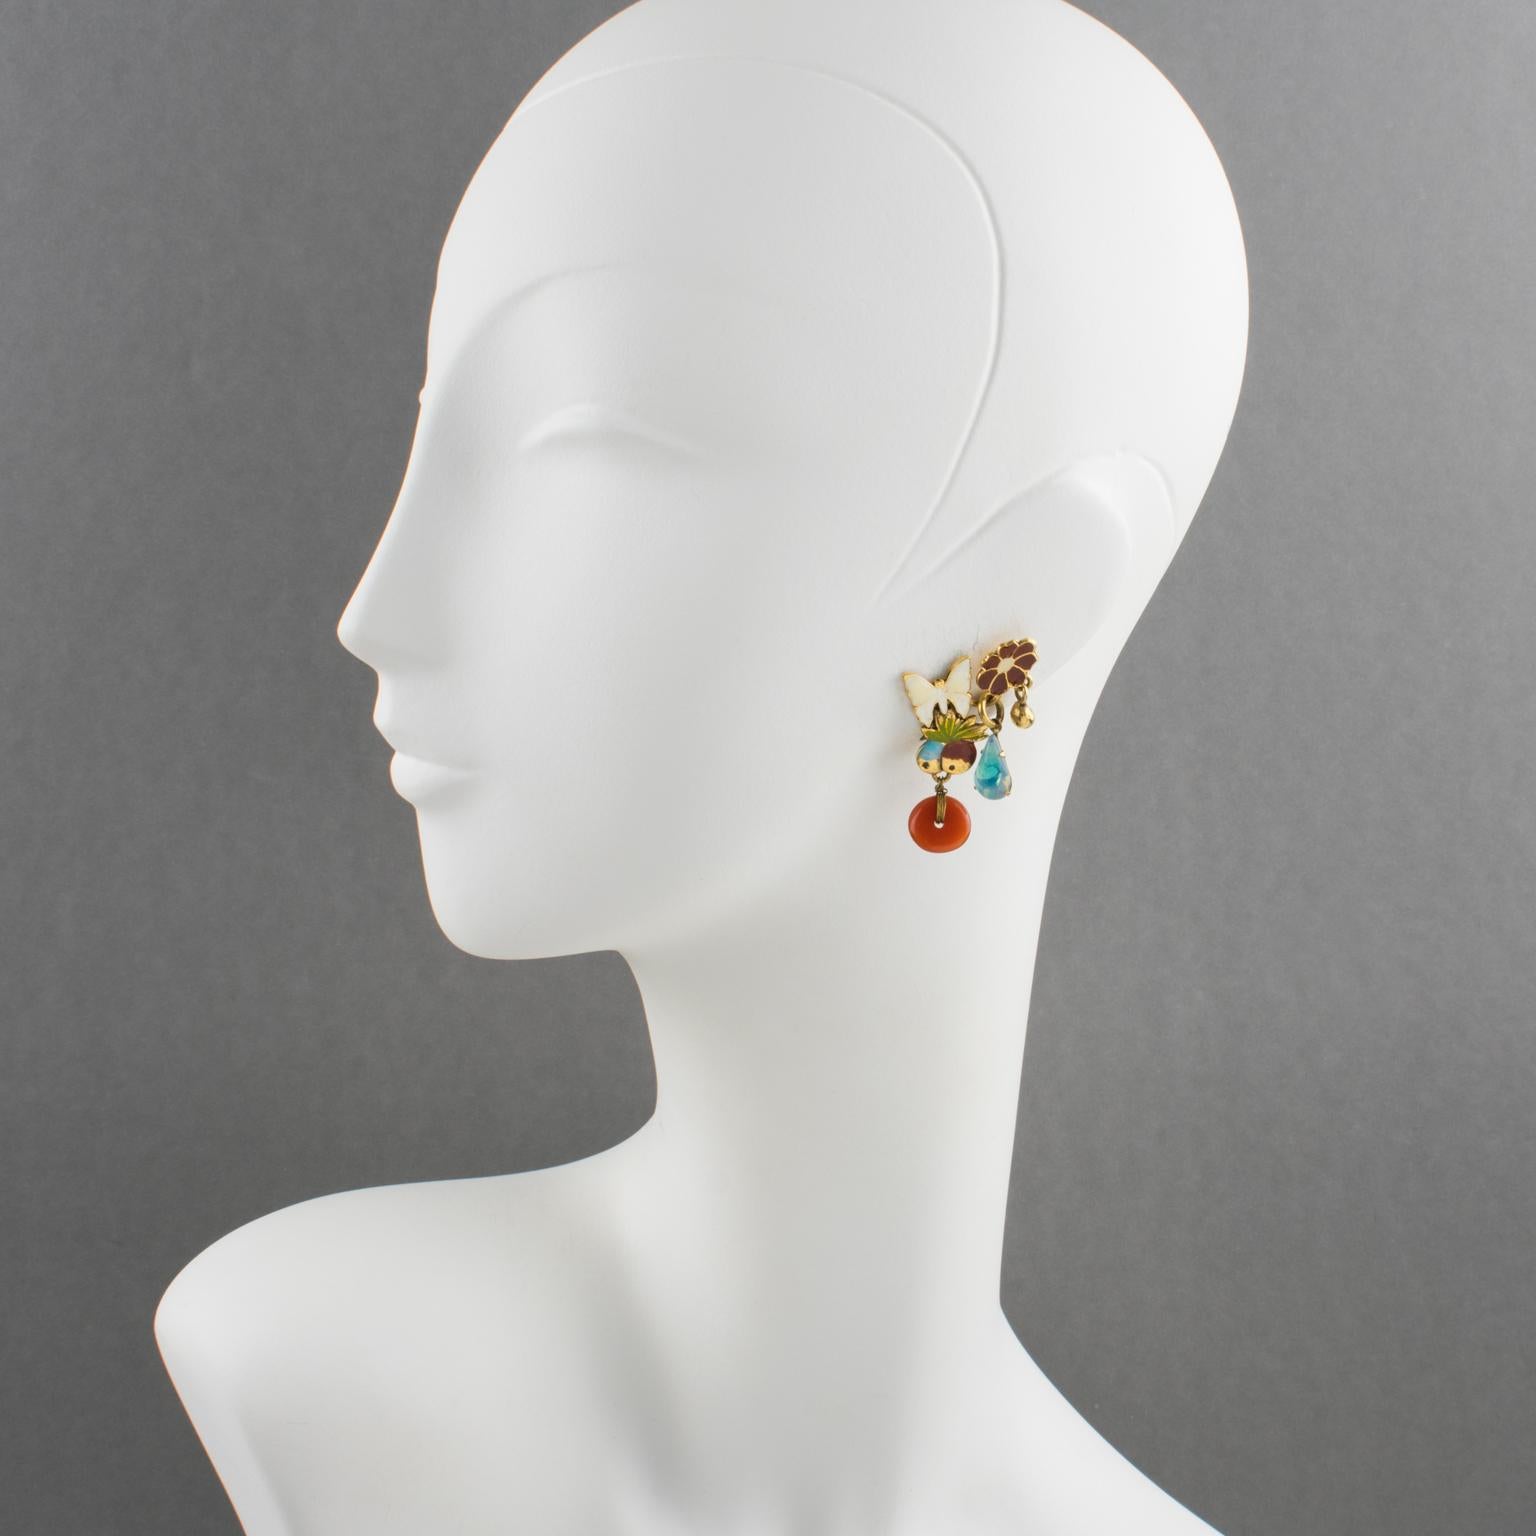 Zoe Coste Paris hat diese hübschen baumelnden Ohrclips entworfen. Die Komposition besteht aus vergoldeten Metallblumen, Schmetterlingen und Früchten, die mit weißer, roter und grüner Emaille verziert sind. Die Ohrringe sind mit baumelnden blauen